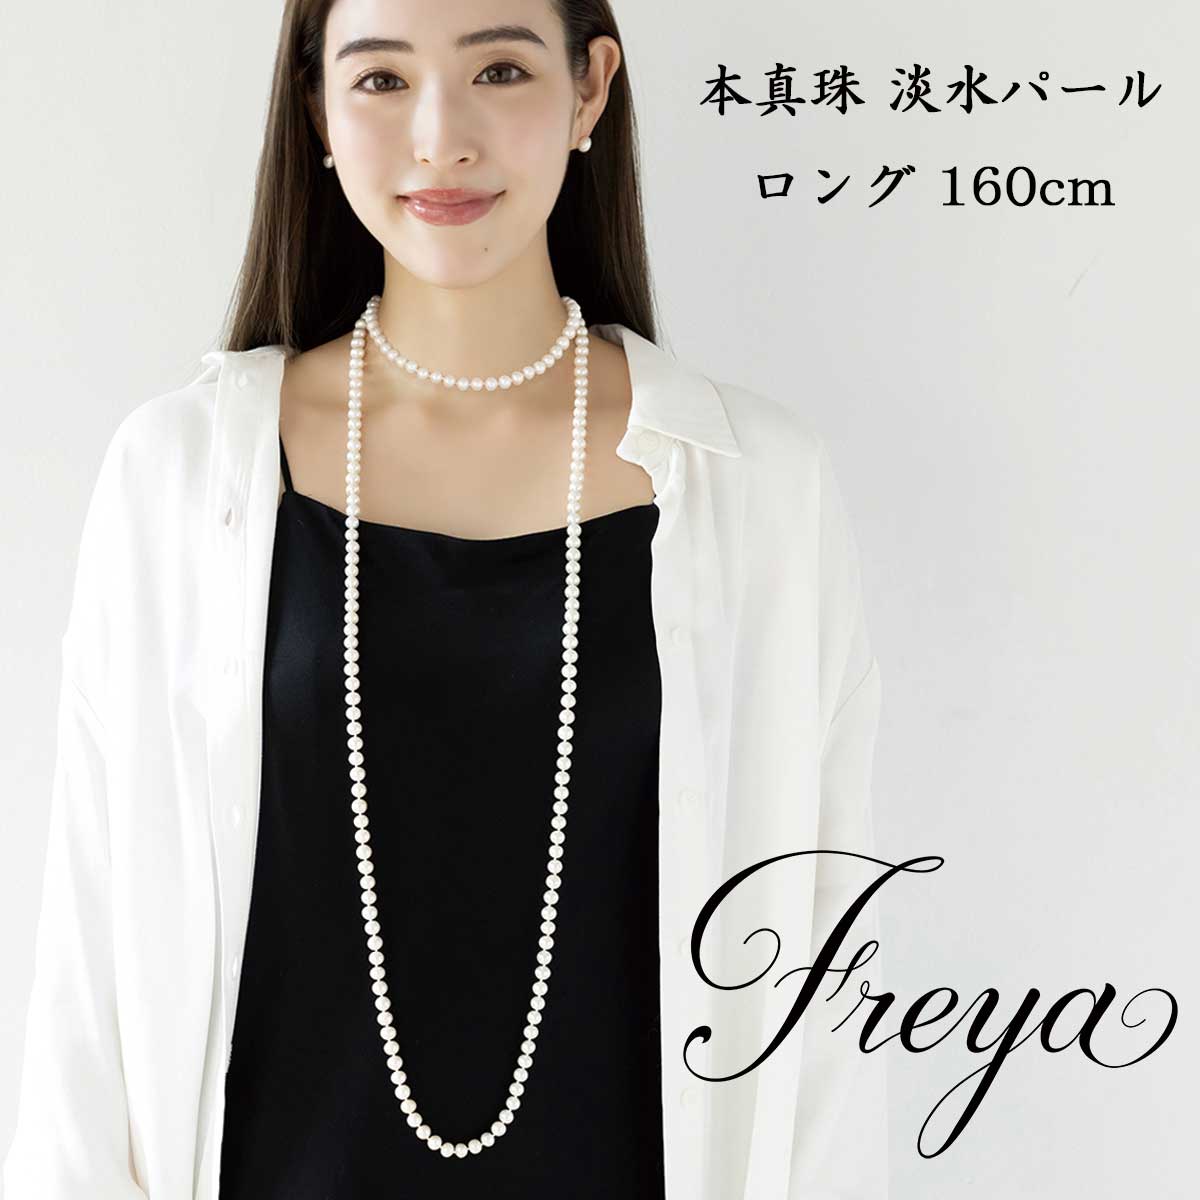 【楽天市場】淡水 本真珠 ロングネックレス/160cm 淡水 本真珠 